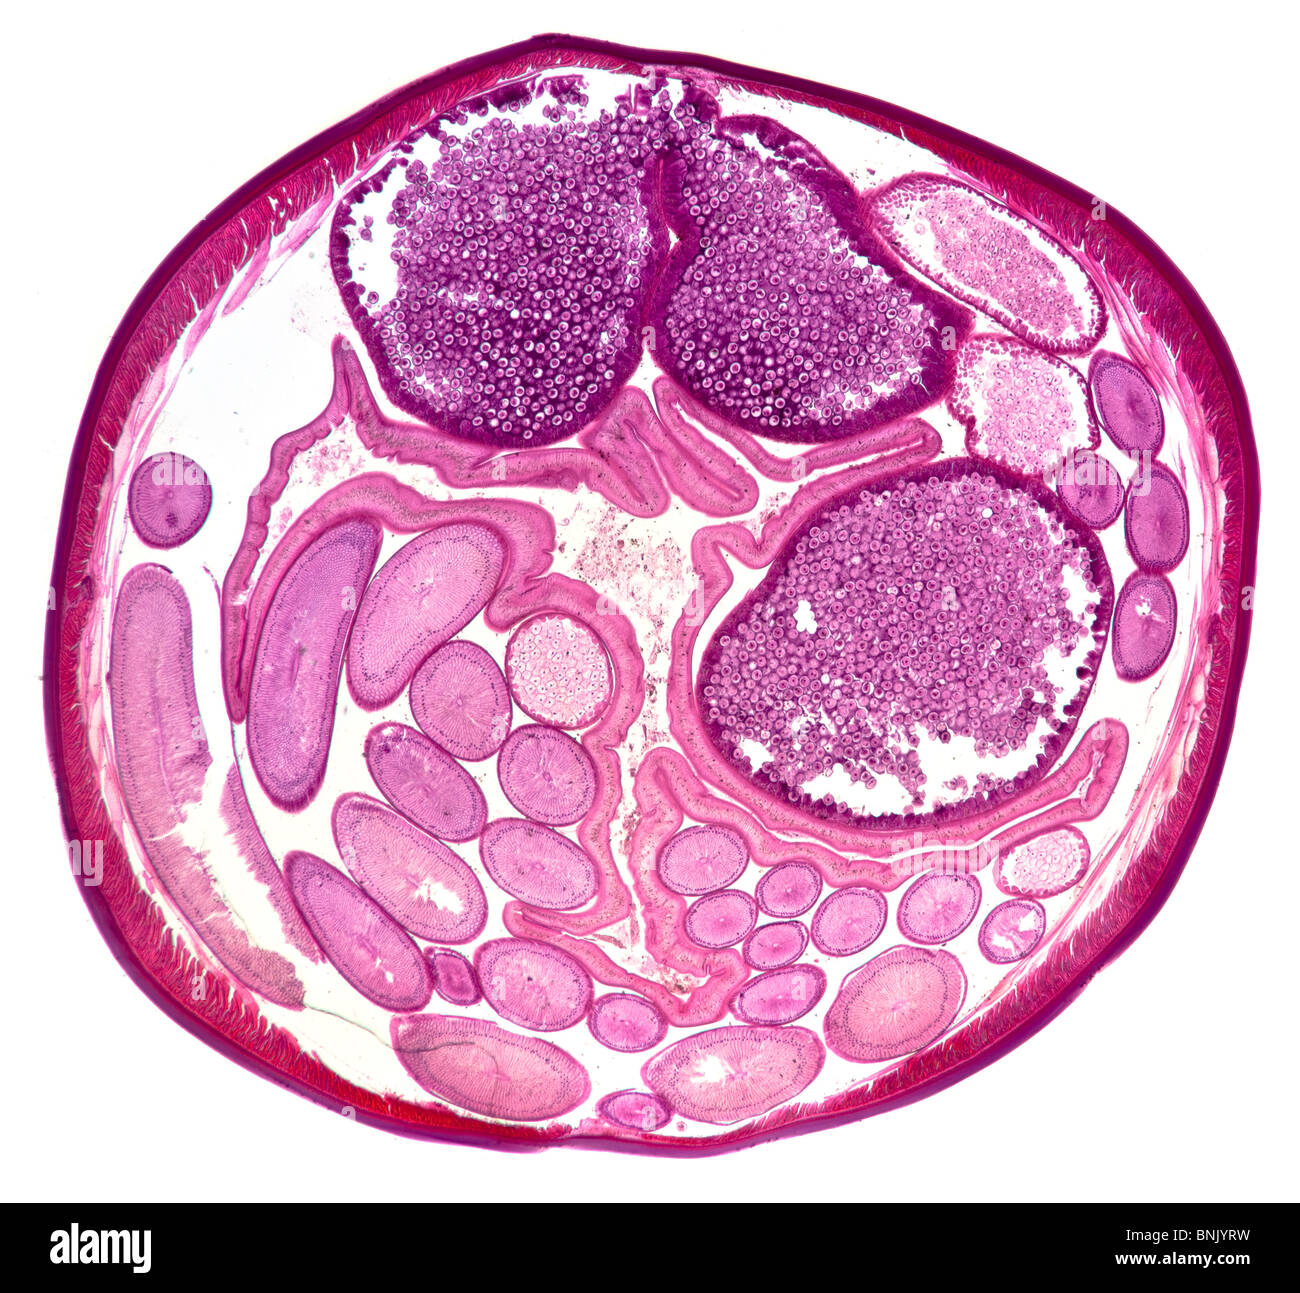 Microfotografía de una sección de Acaris sp. gusano nematodo parásito (hembra) Foto de stock